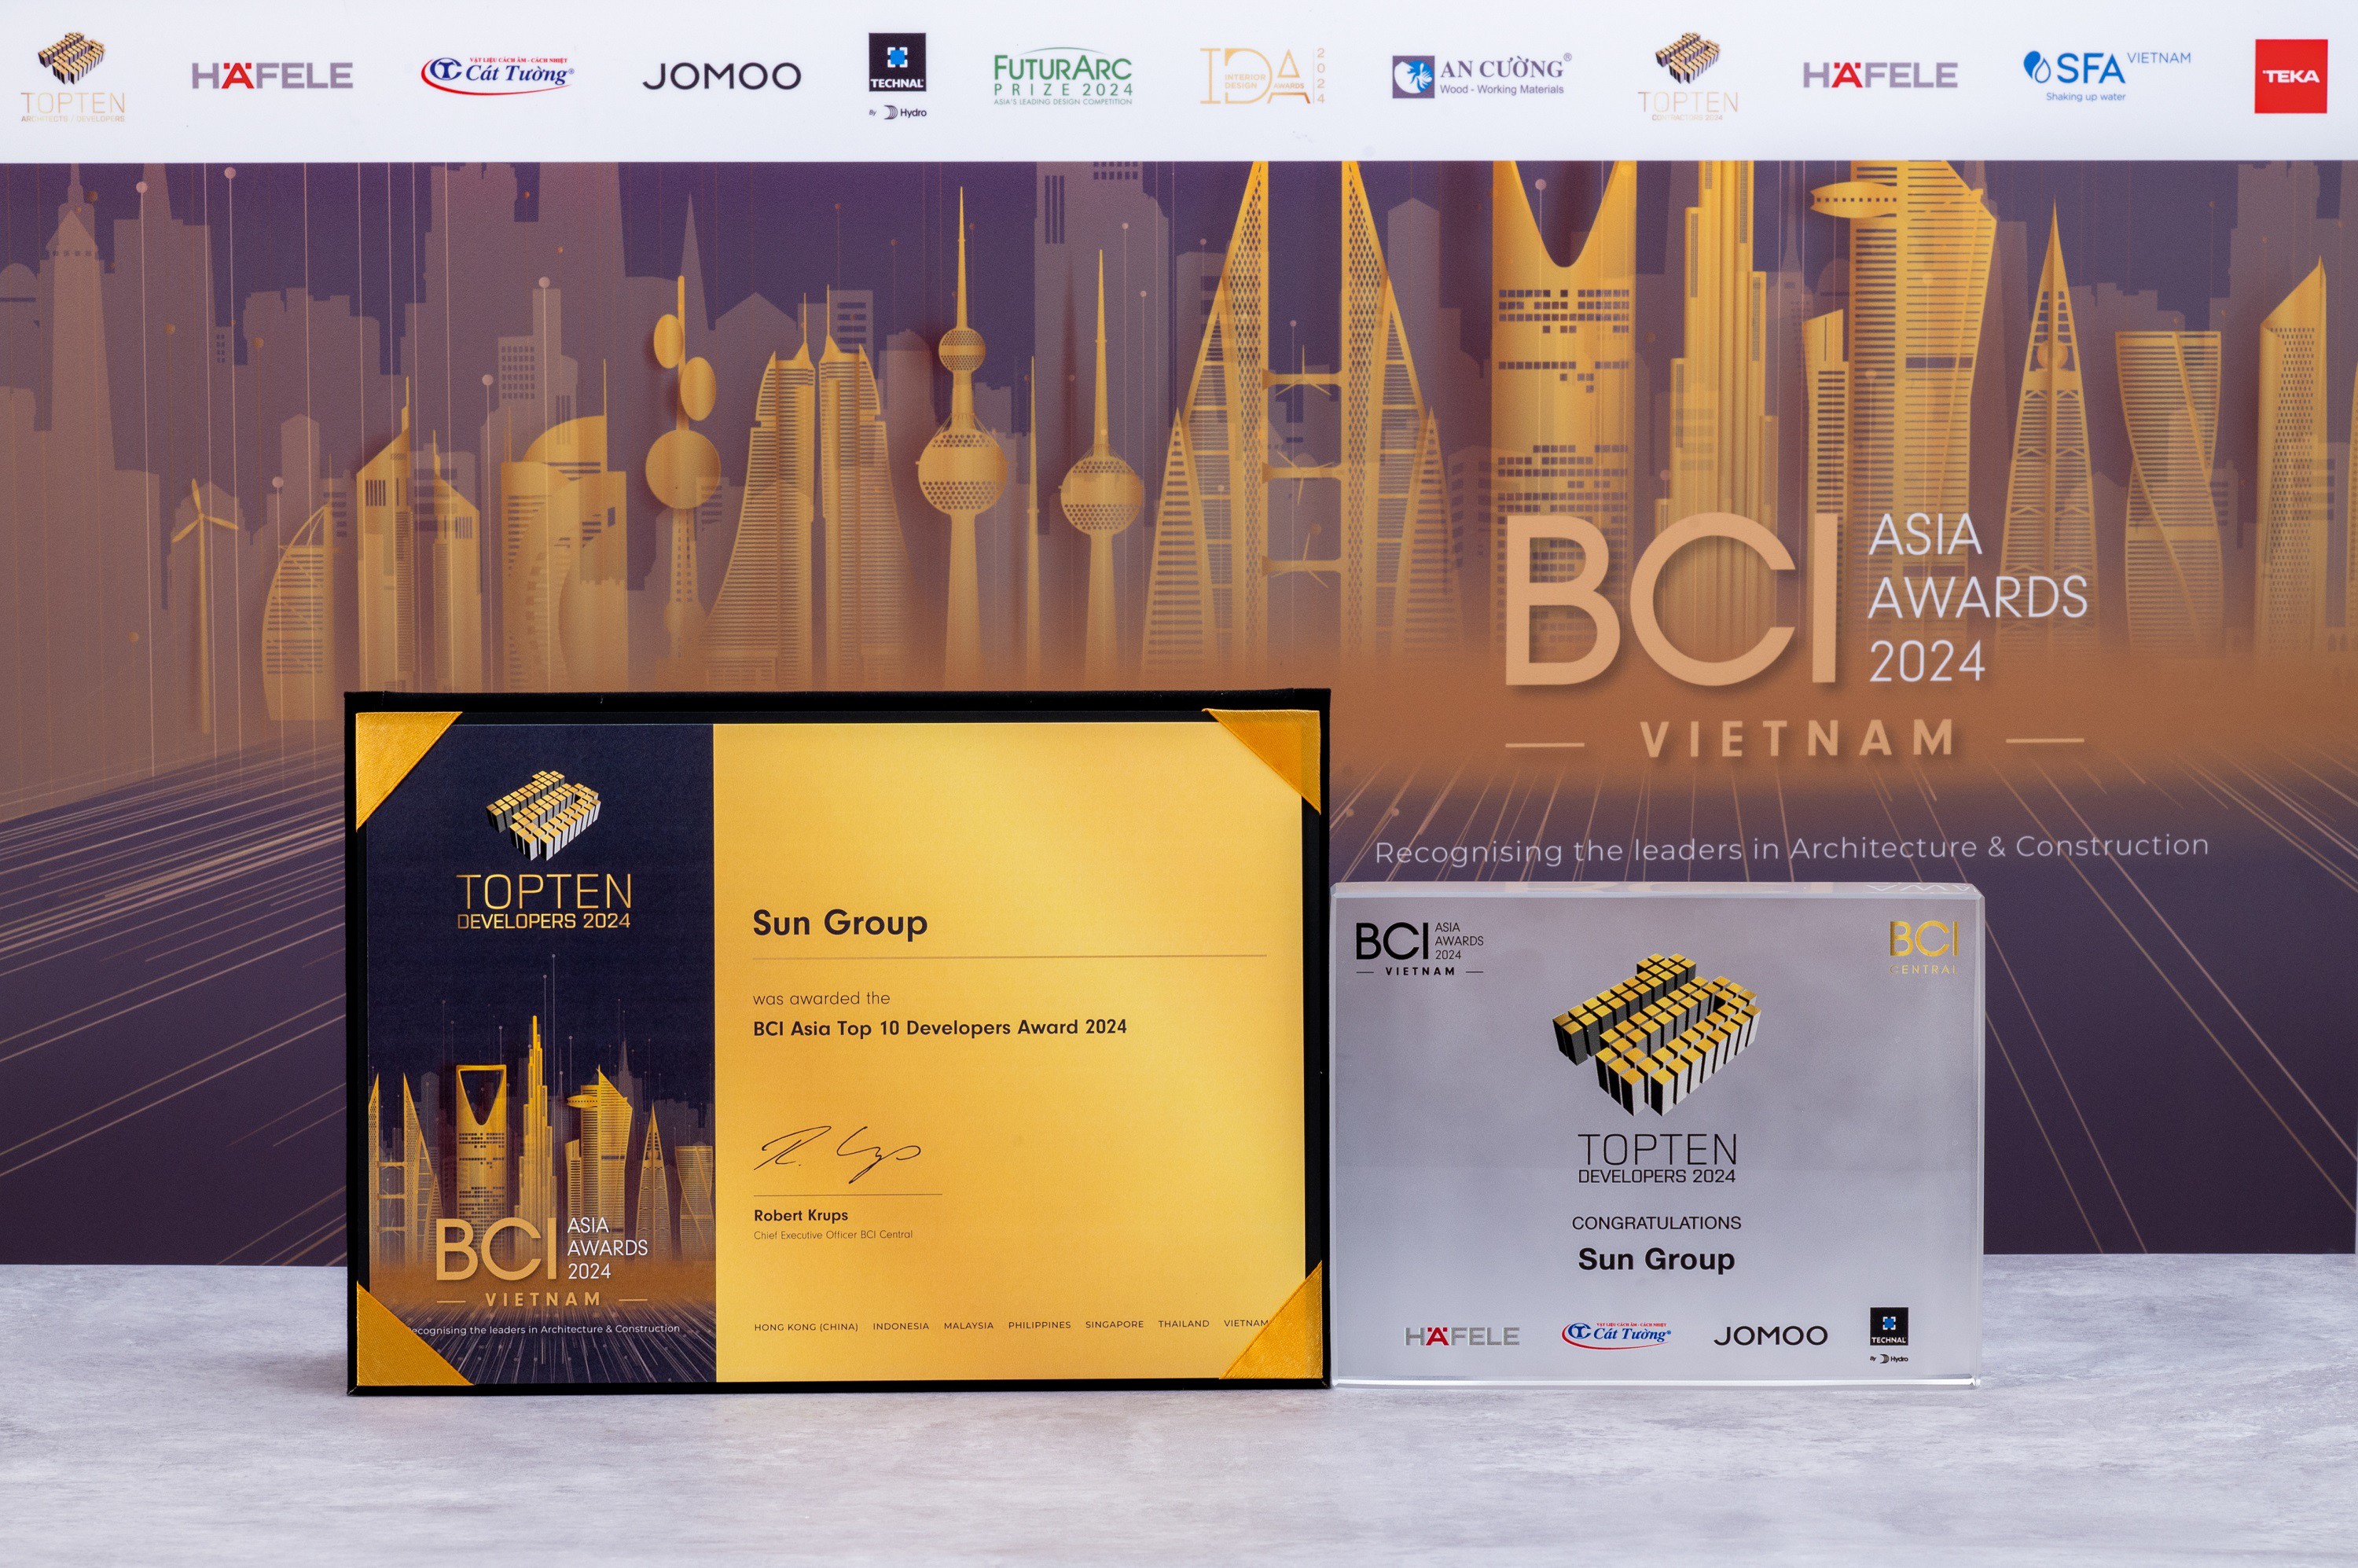 BCI Asia Awards 2024 tiếp tục vinh danh Sun Group trong “Top 10 chủ đầu tư hàng đầu Việt Nam” - 2